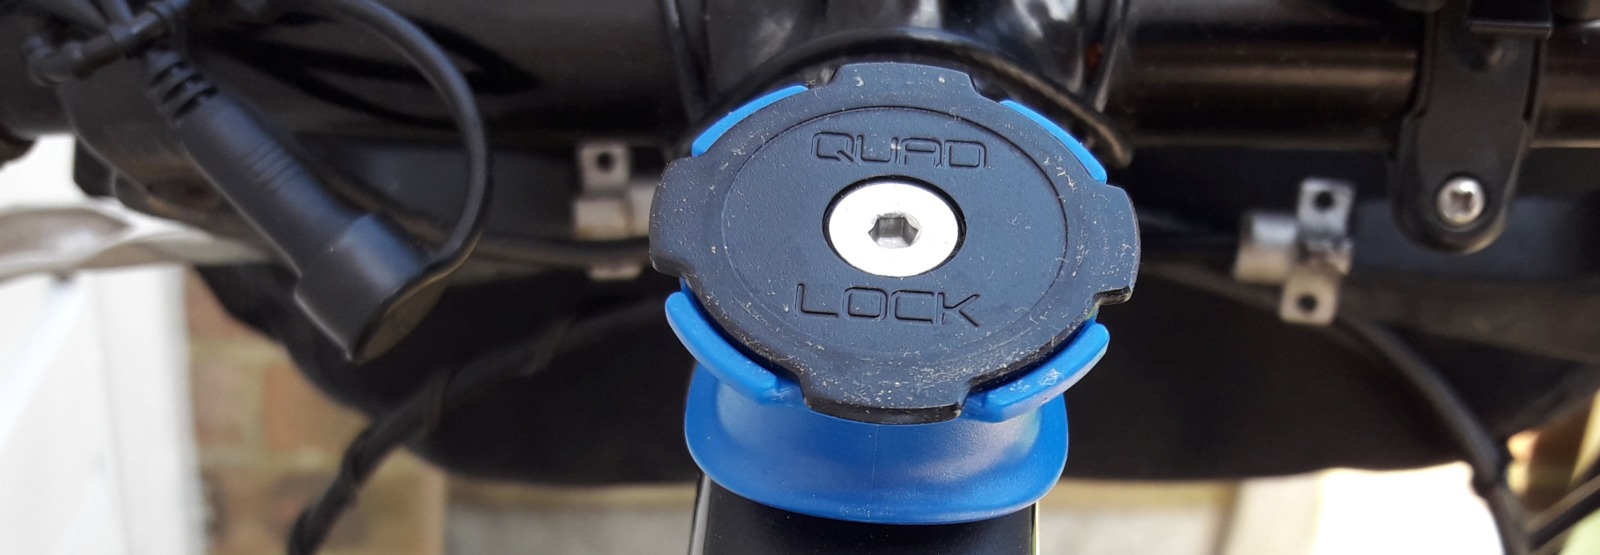 Quad Lock stem bar mount